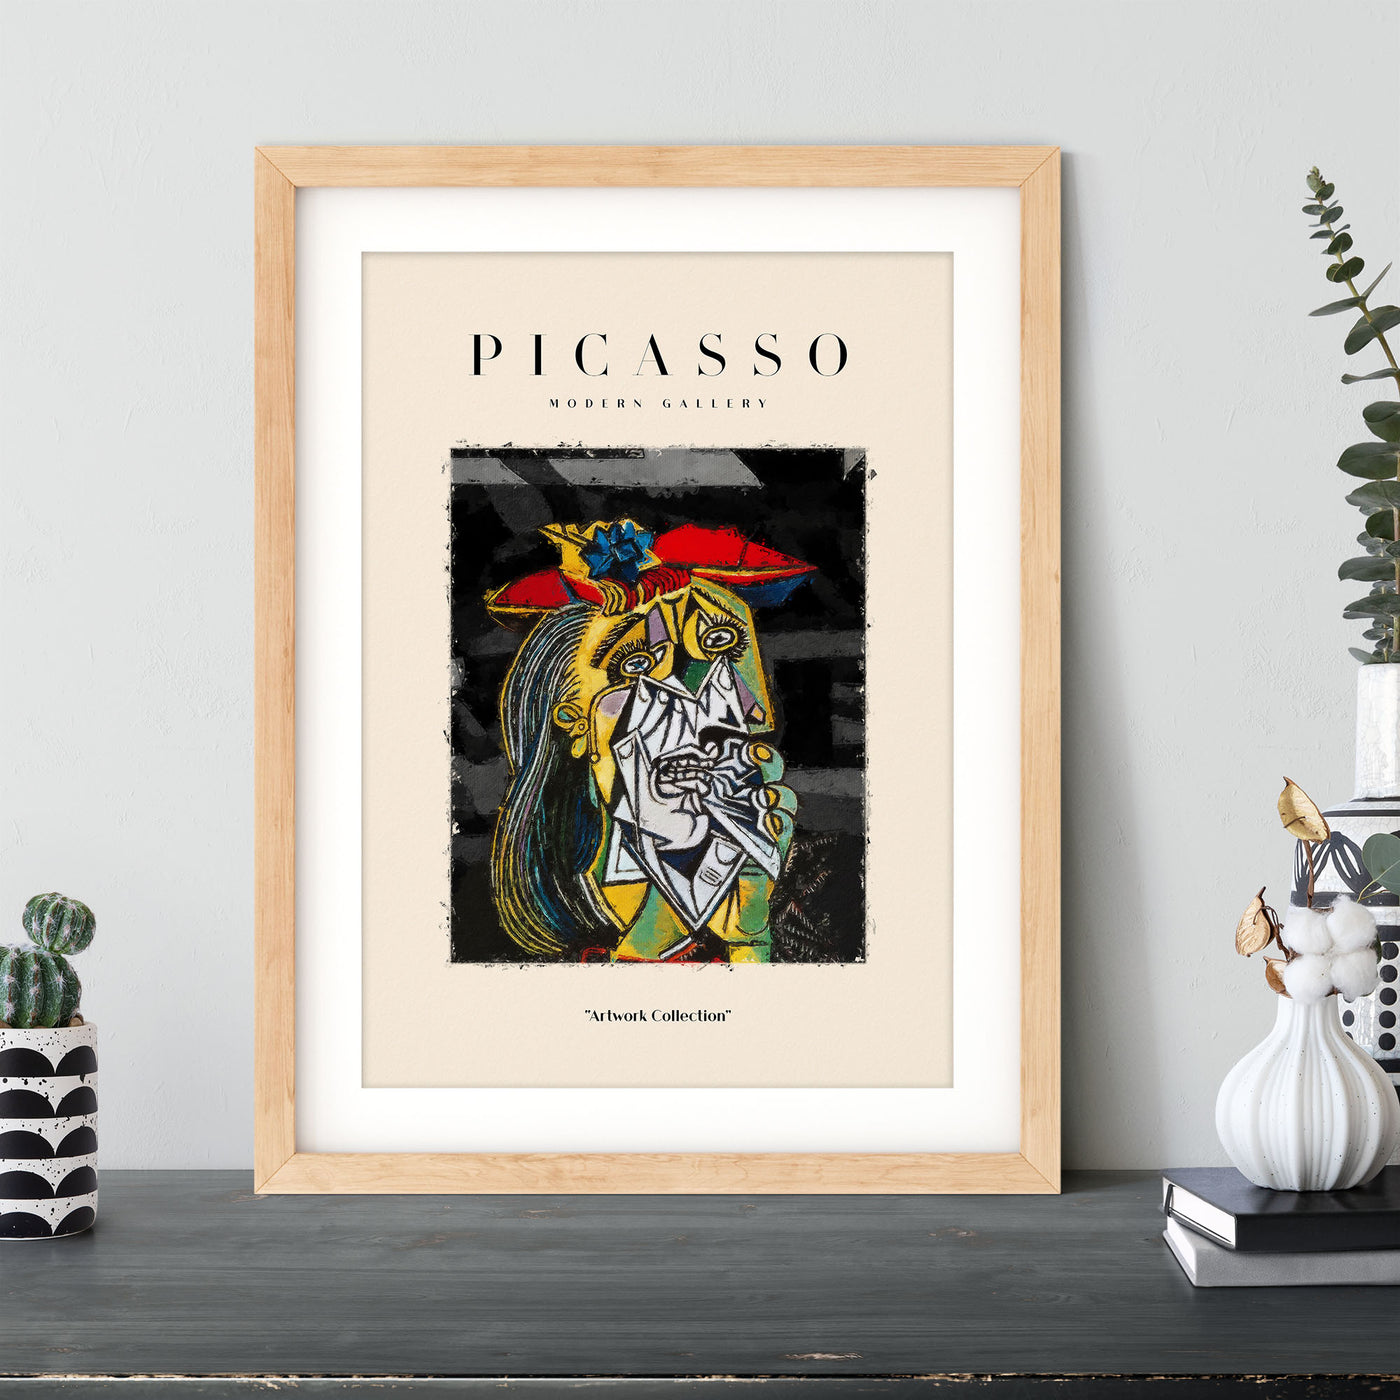 Pablo Picasso - #23